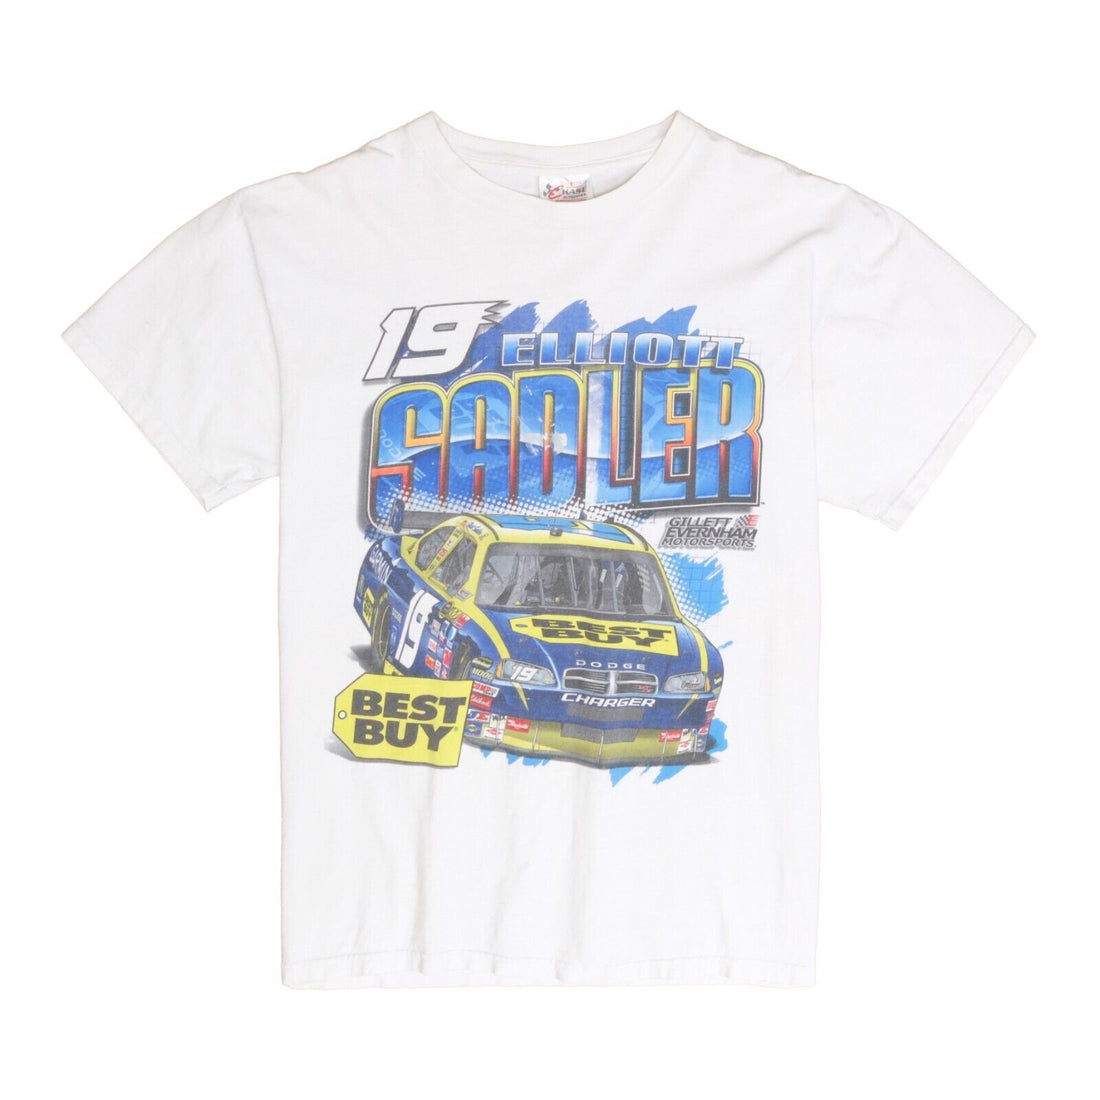 Vintage Elliot Sadler Chase Racing T-Shirt Size Large White Double Sided NASCAR